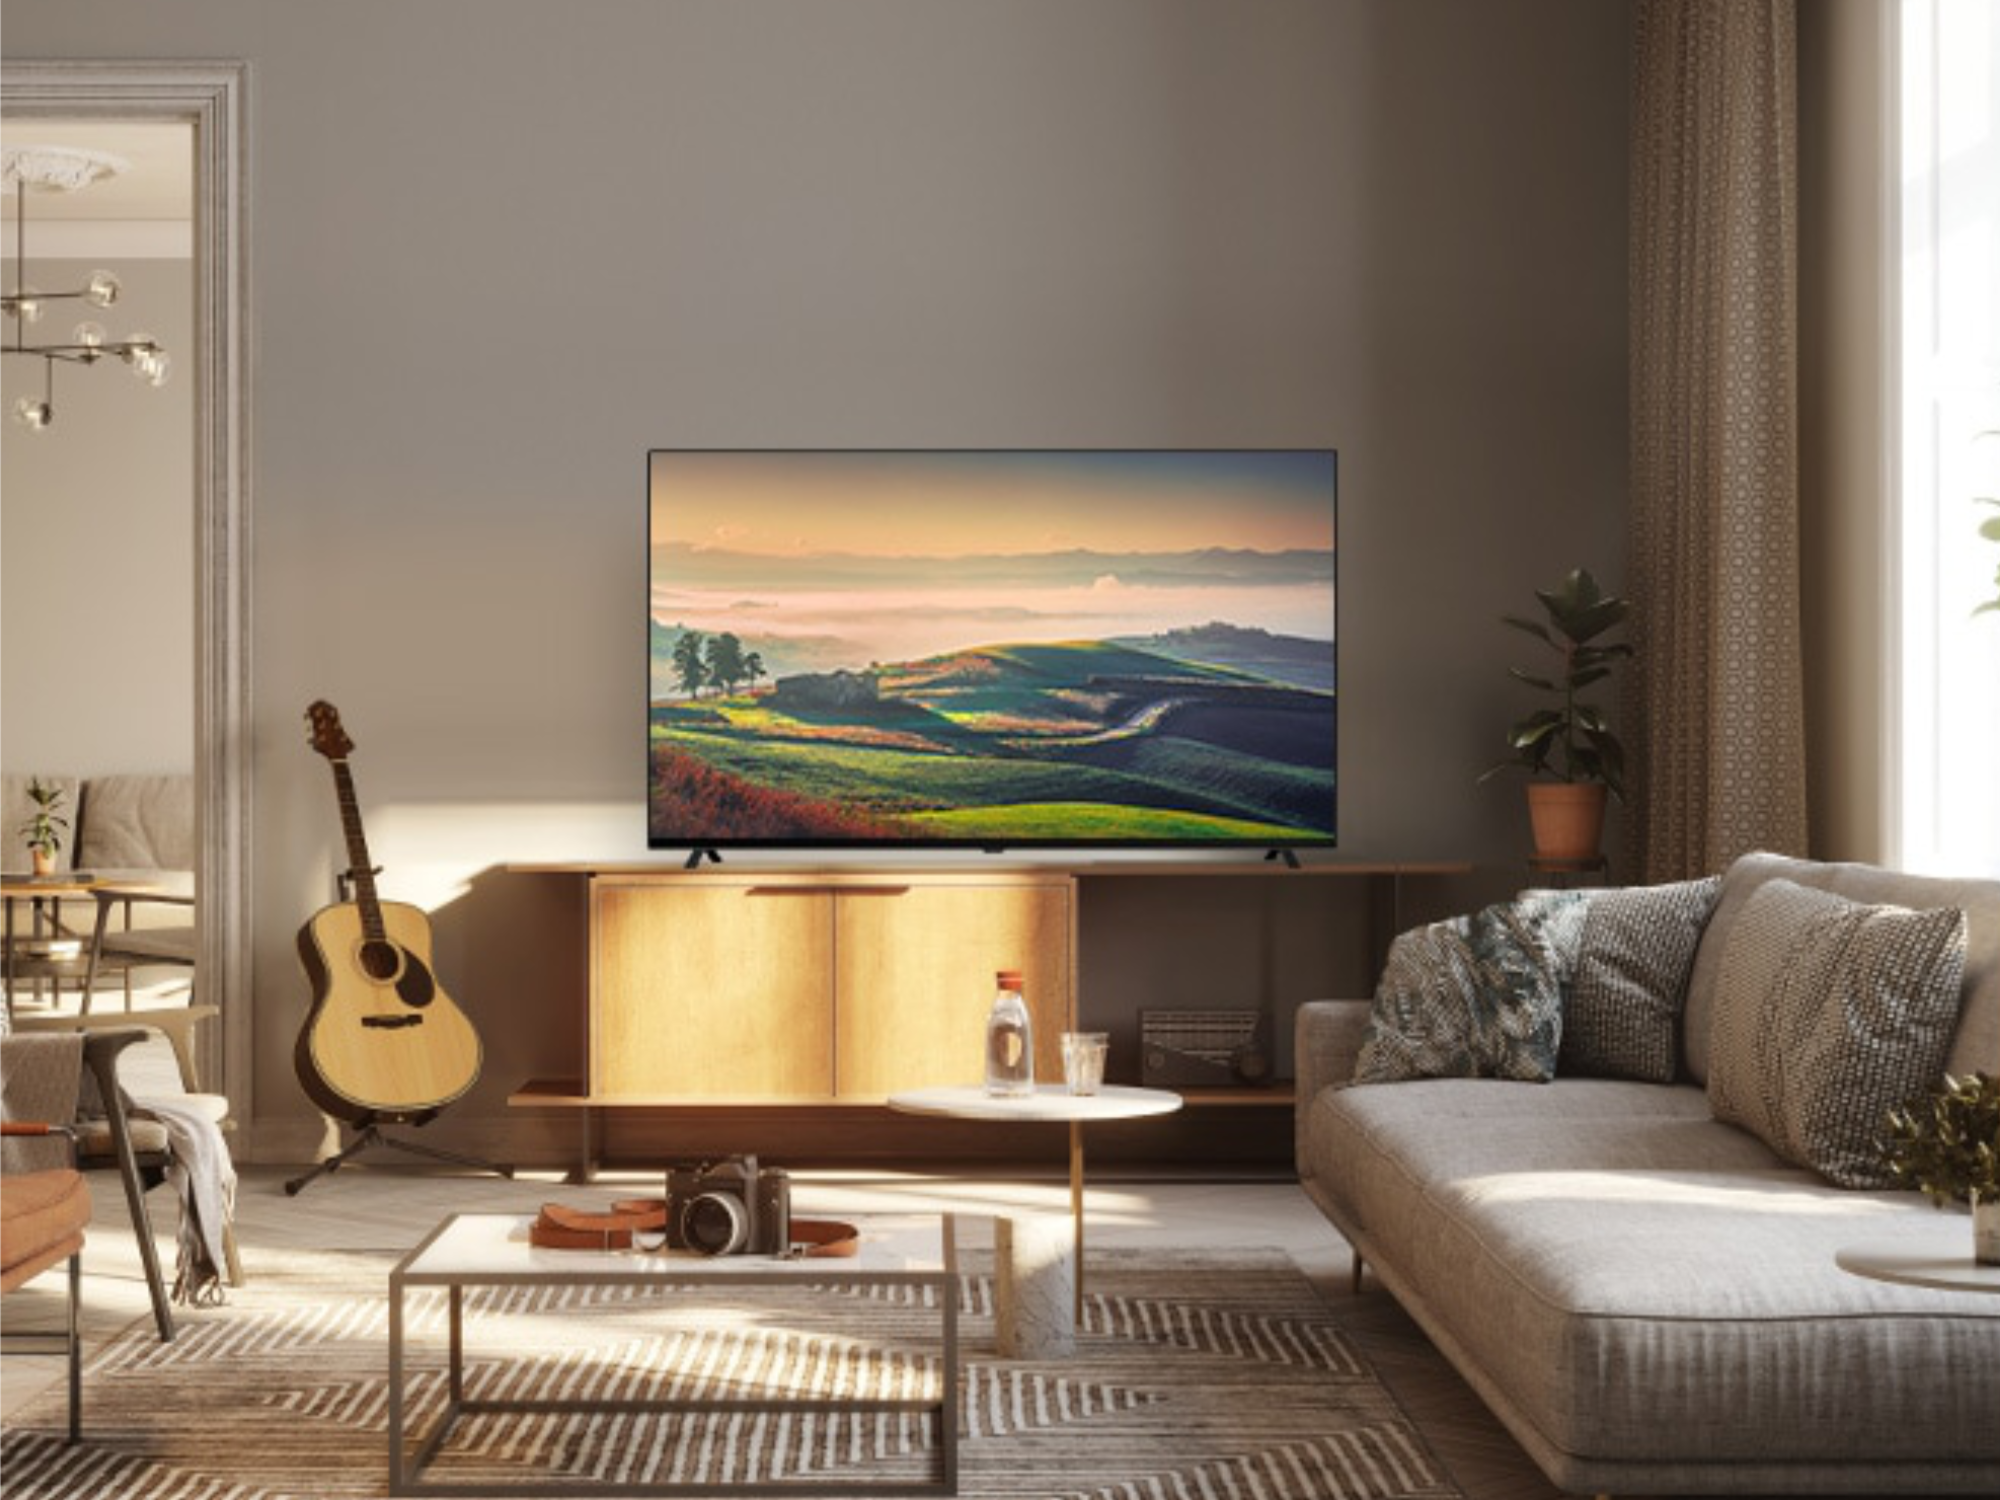 #OLED-TV-Technik extrem günstig: LG-Fernseher jetzt für deutlich unter 700 Euro erhältlich